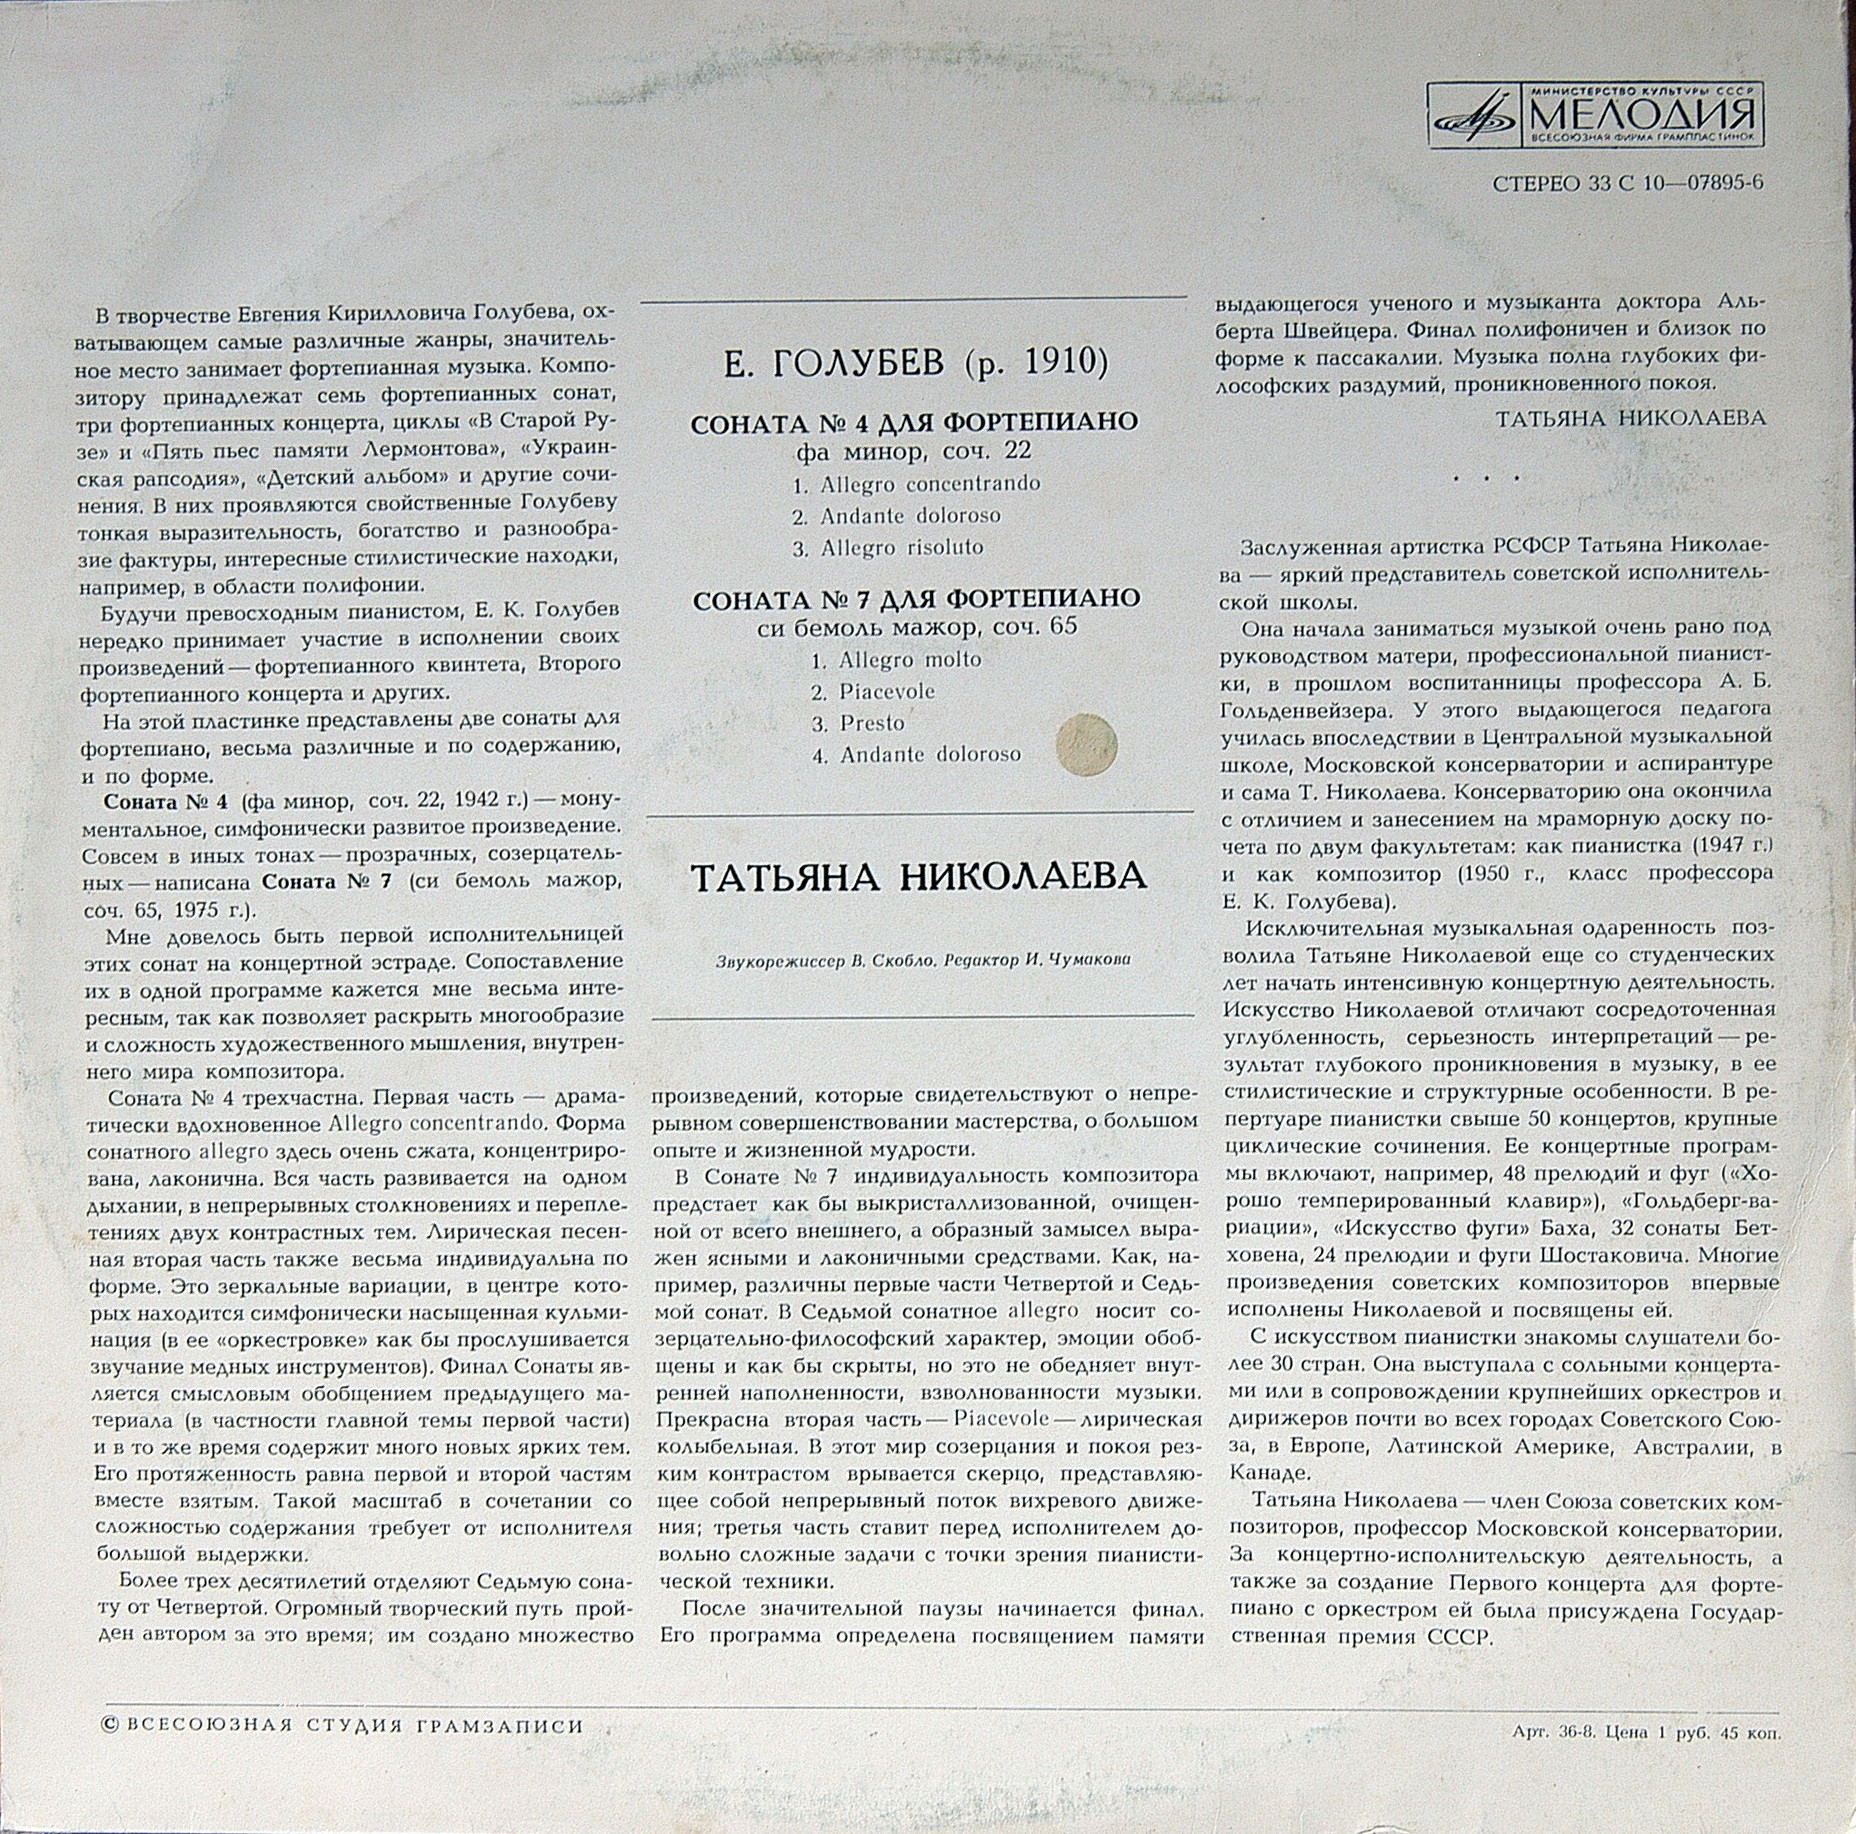 Е. ГОЛУБЕВ (1910) Сонаты для ф-но № 4 и 7 (Т. Николаева)